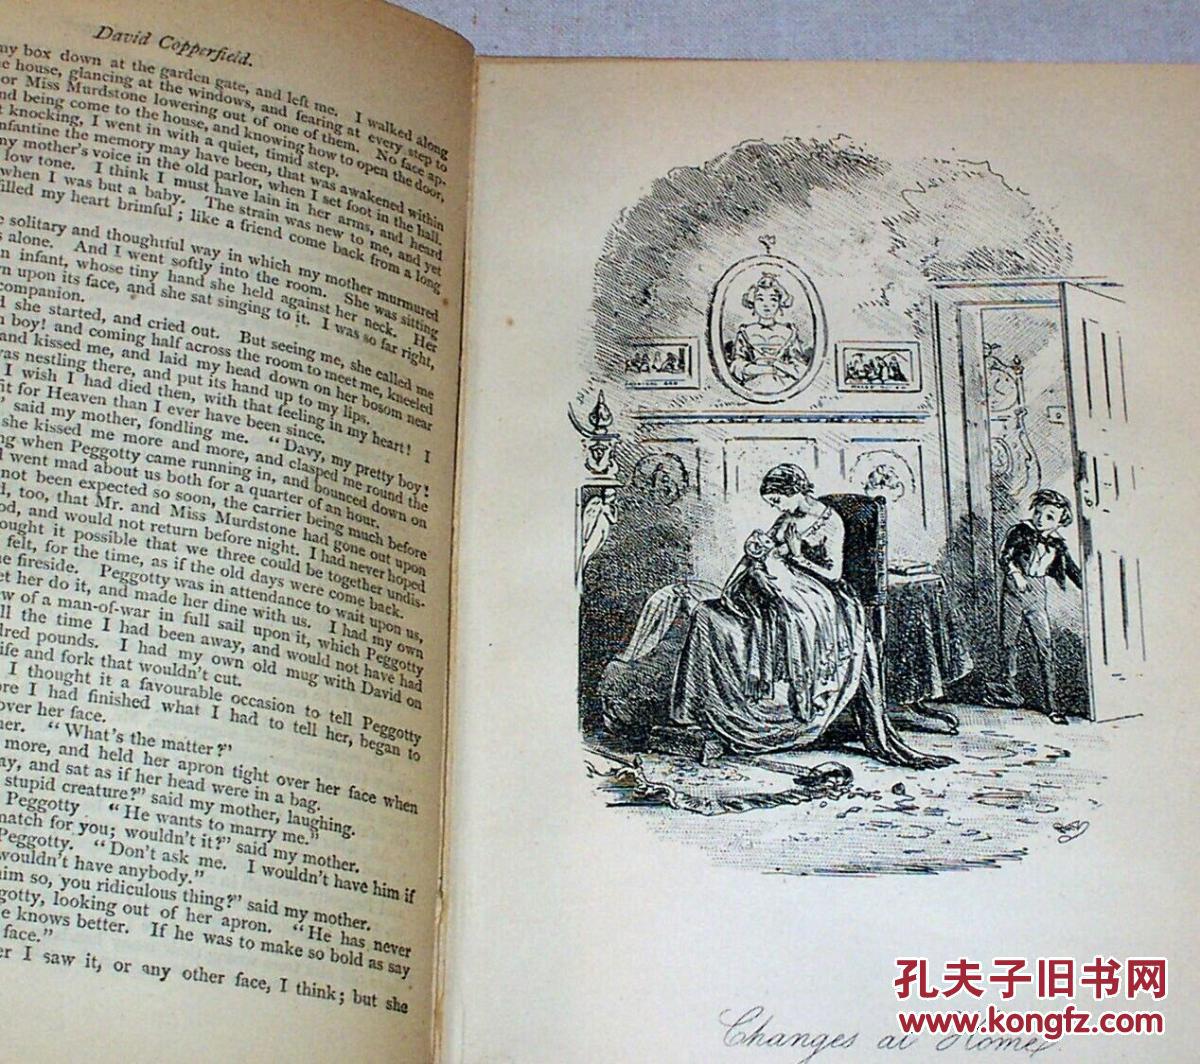 大量版画插图,世界名著1896年英国伦敦出版《狄更斯著作:大卫科波菲尔